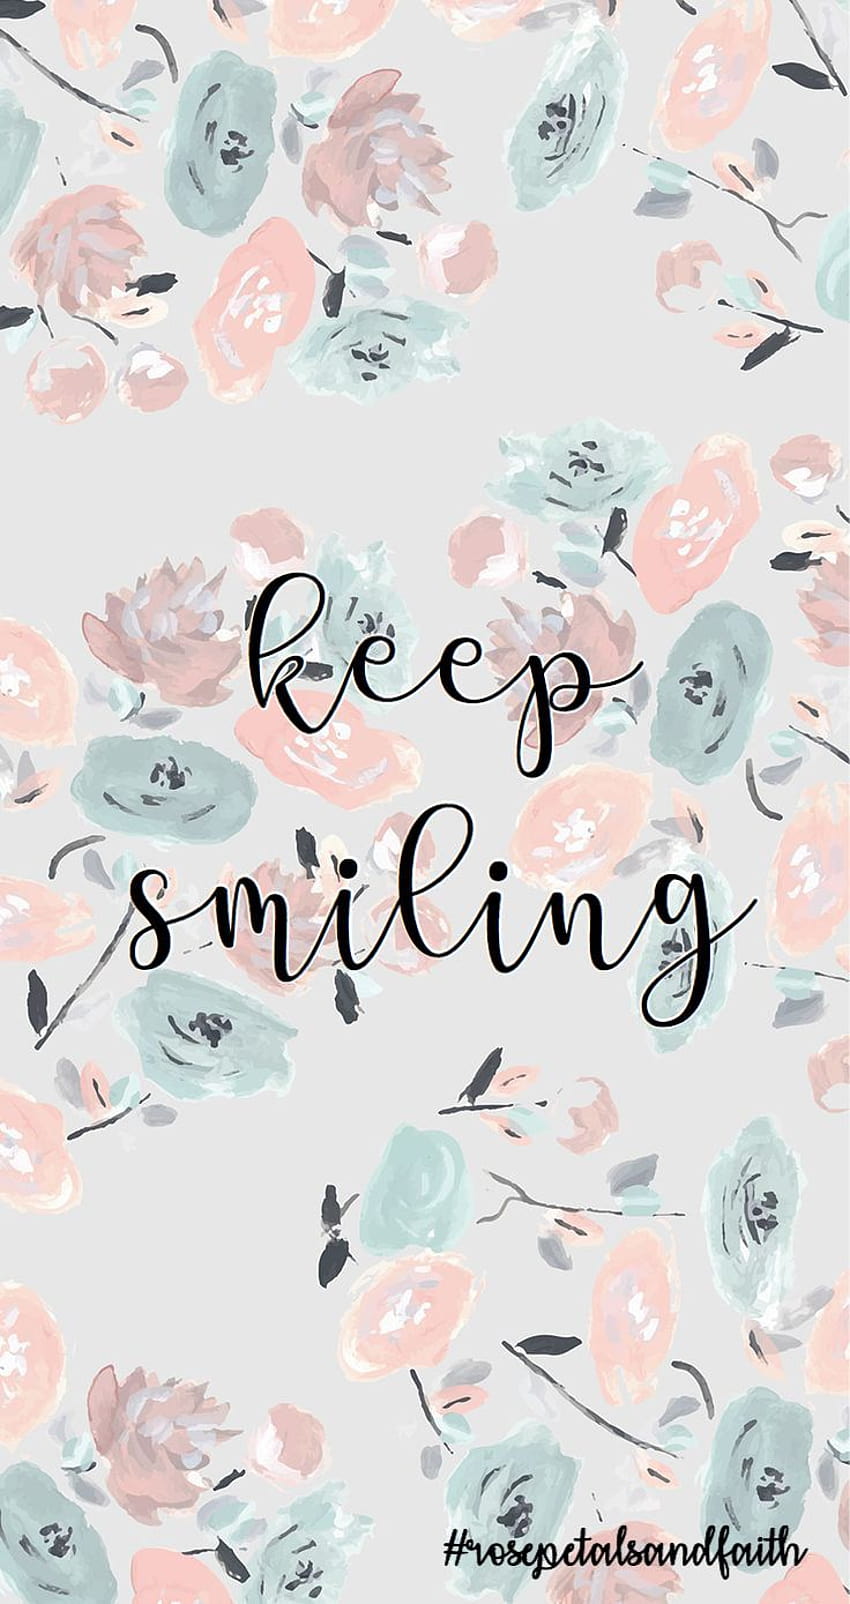 Keep Smiling Wallpaper Images  Free Download on Freepik